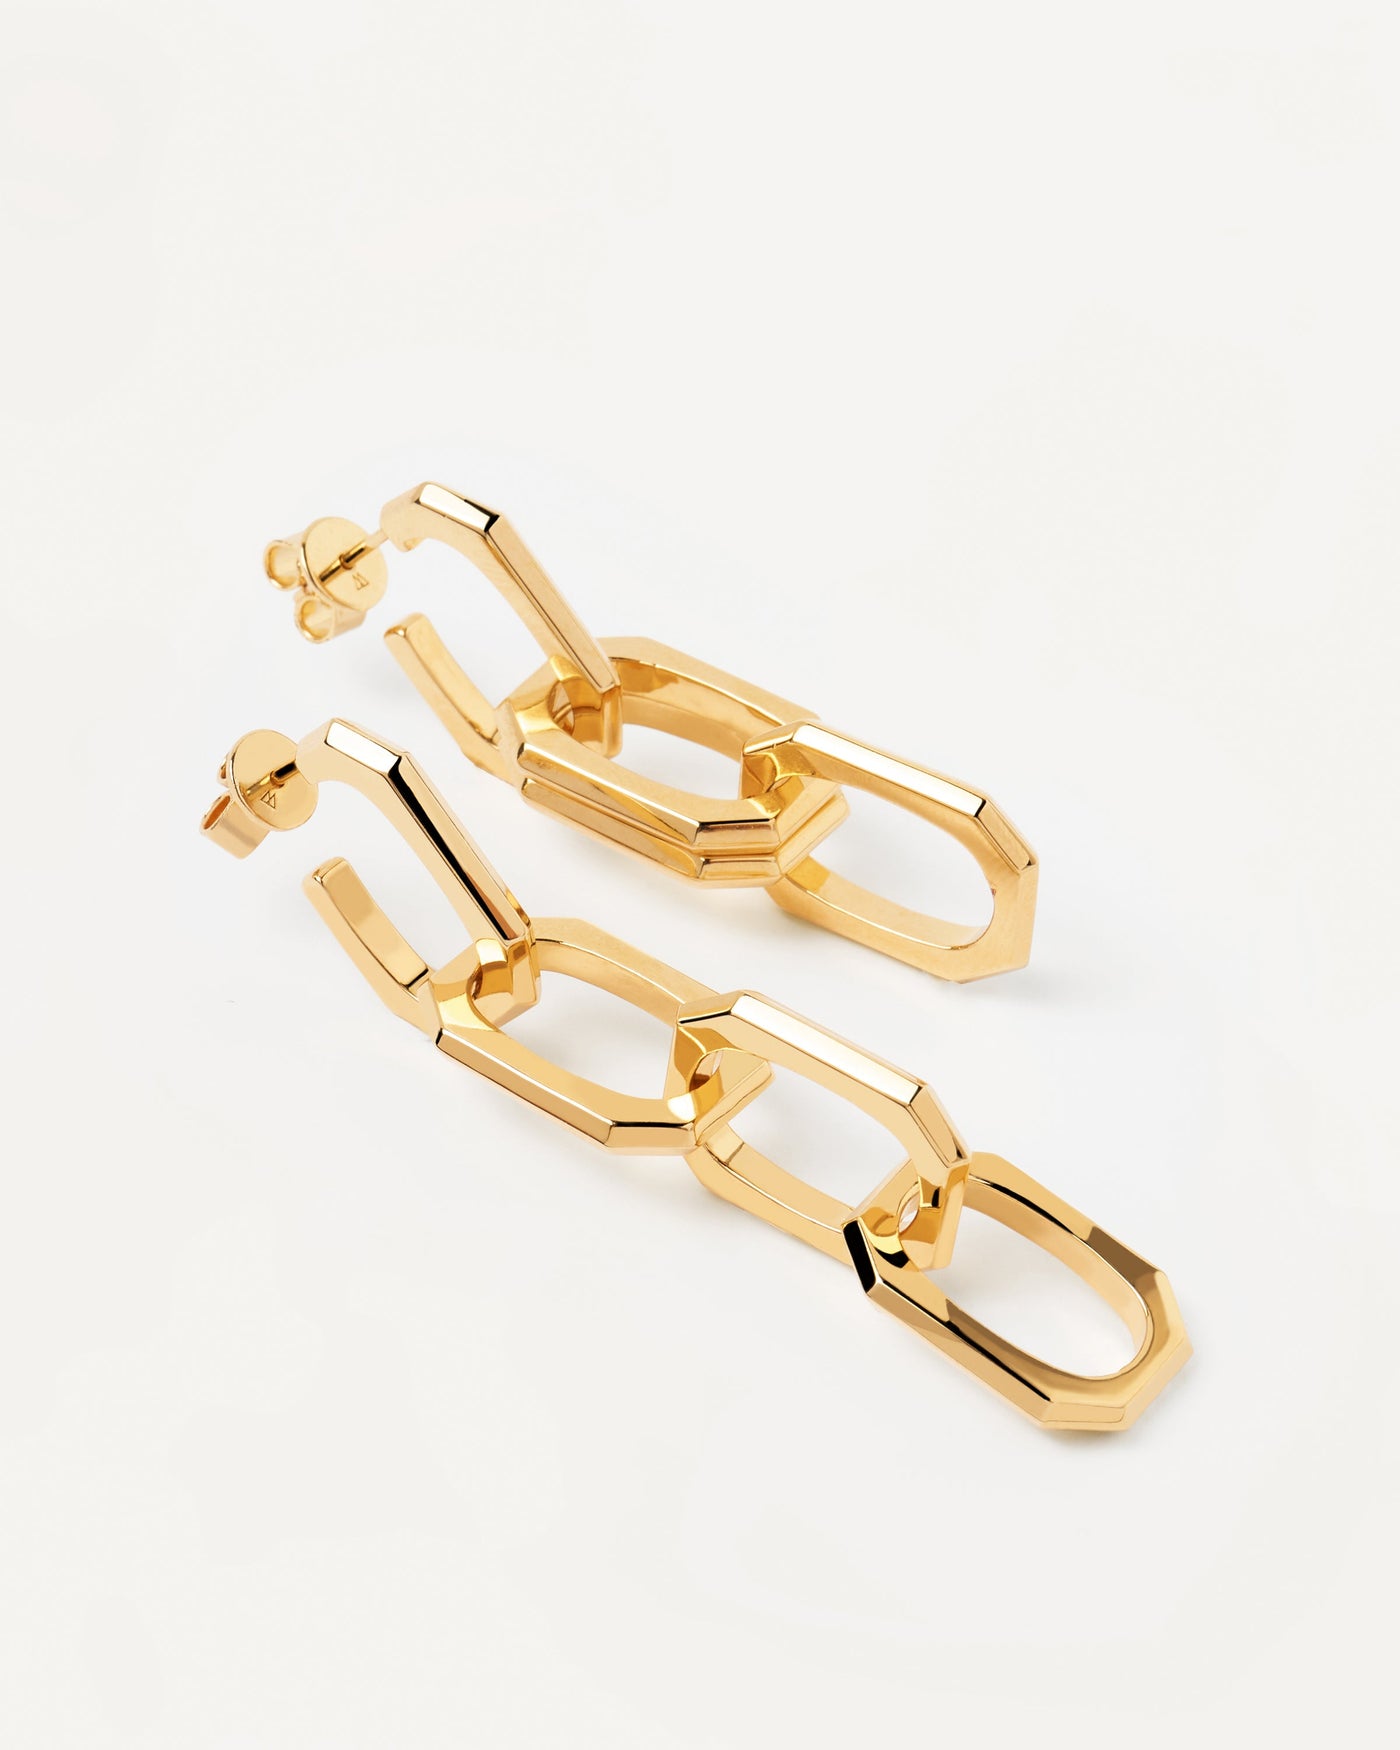 Signature Ketten Ohrringe. Kabelkette hängende Ohrringe mit oktogonalen Glieren in 18 Karat Goldbeschichtung. Erhalten Sie die neuesten Produkte von PDPAOLA. Geben Sie Ihre Bestellung sicher auf und erhalten Sie diesen Bestseller.